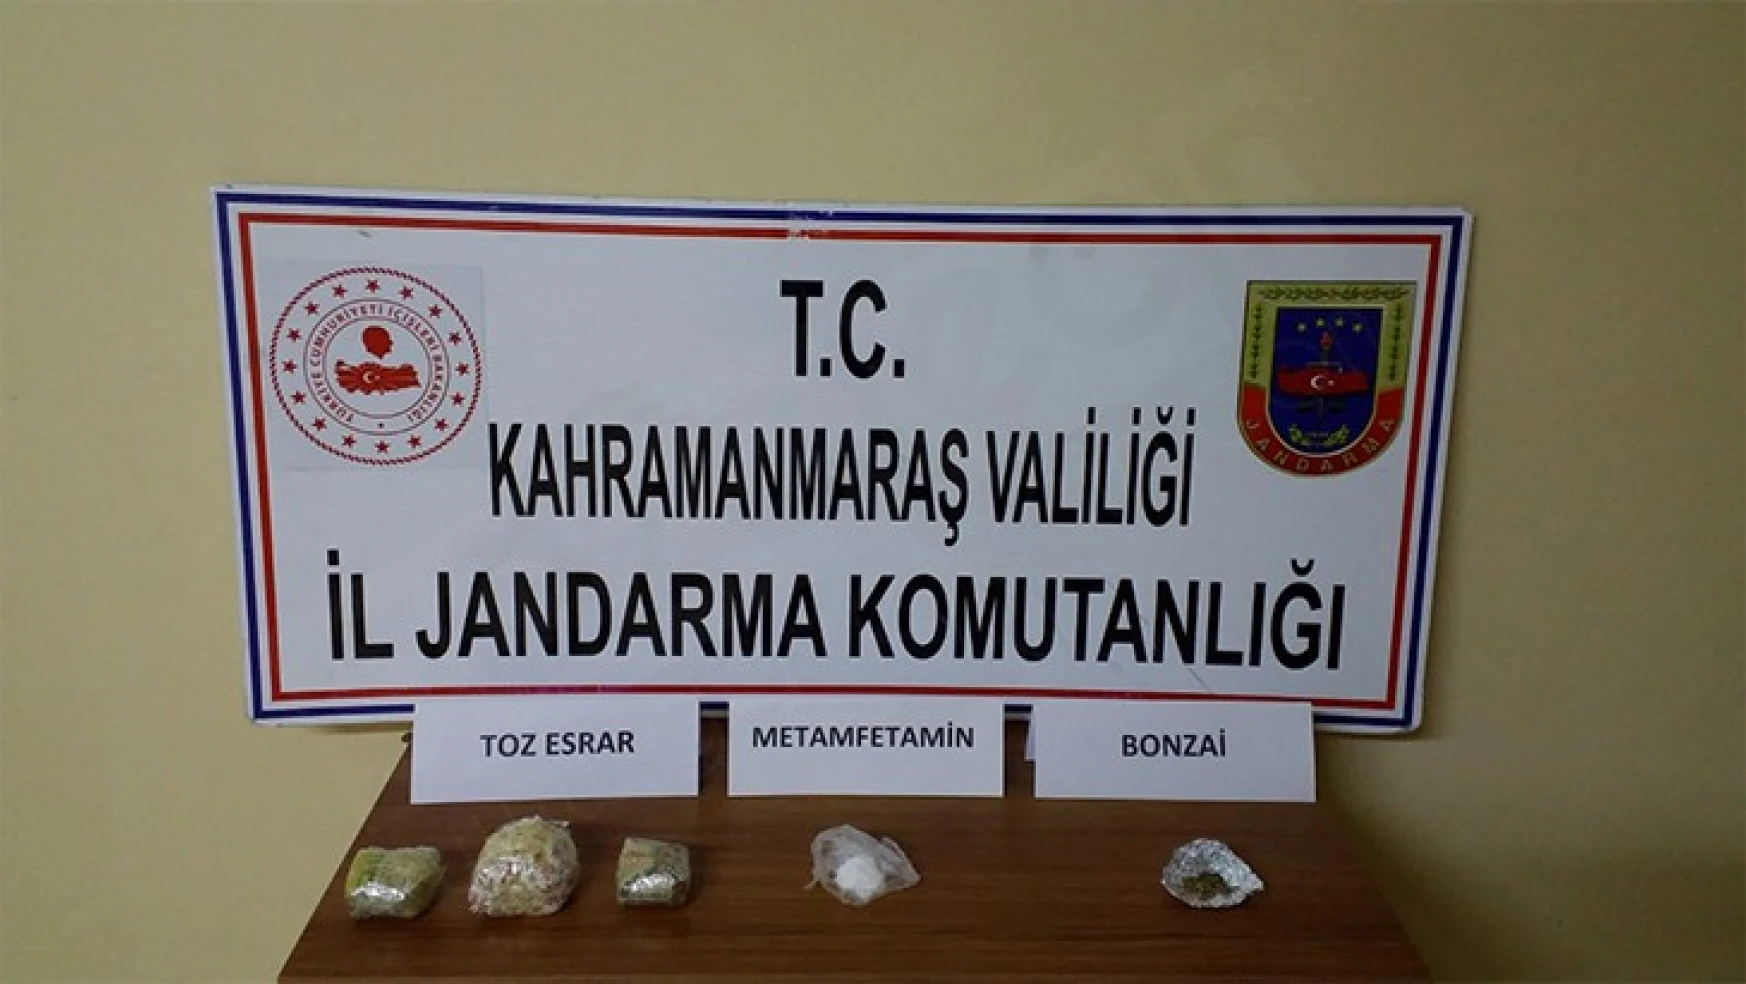 Kahramanmaraş'ta uyuşturucu operasyonu: 5 kişi yakalandı